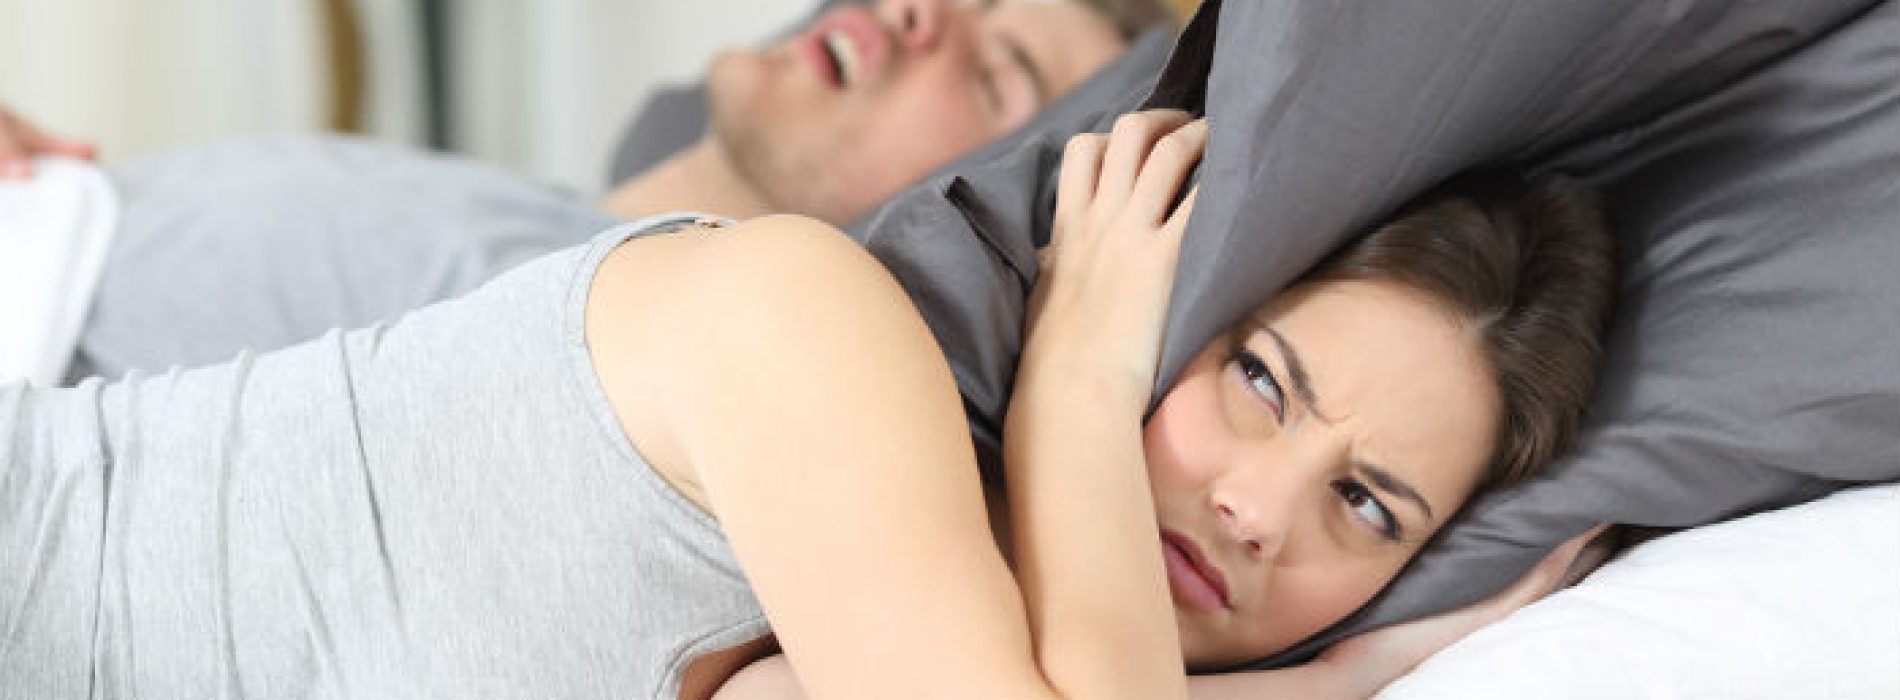 De meest eenvoudige remedie om snel van snurken en slaapapneu af te komen